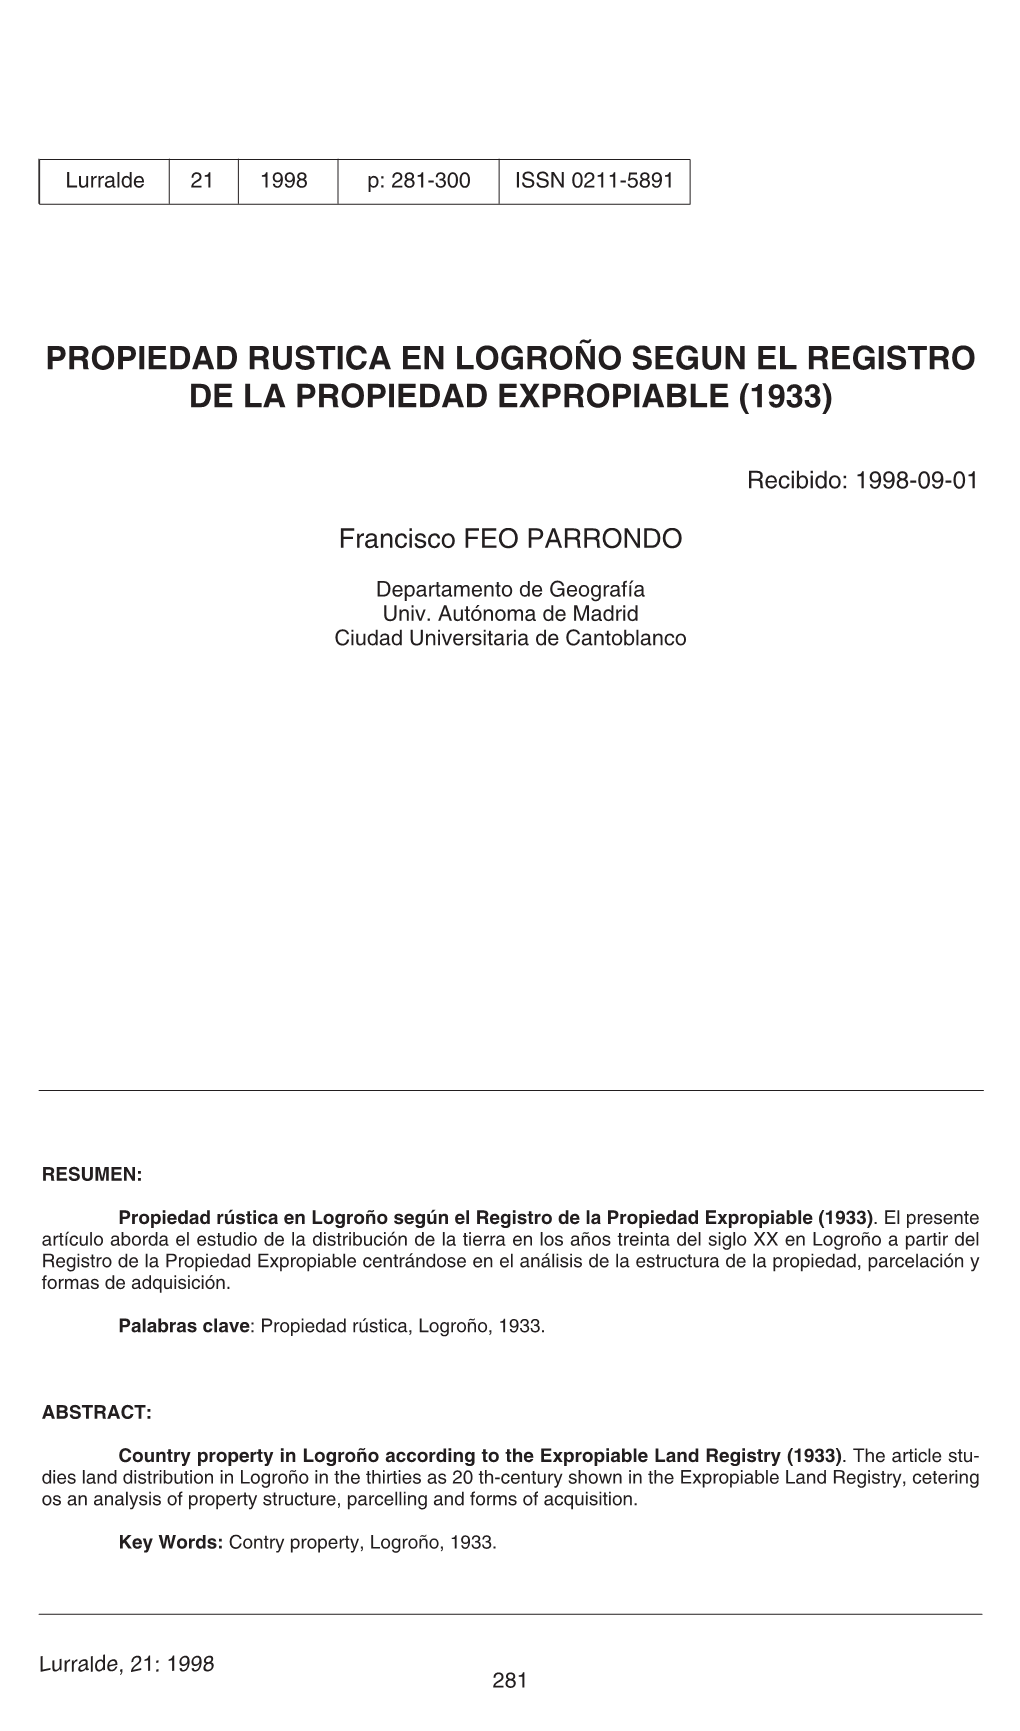 Propiedad Rústica En Logroño Según El Registro De La Propiedad Expropiable (1933)